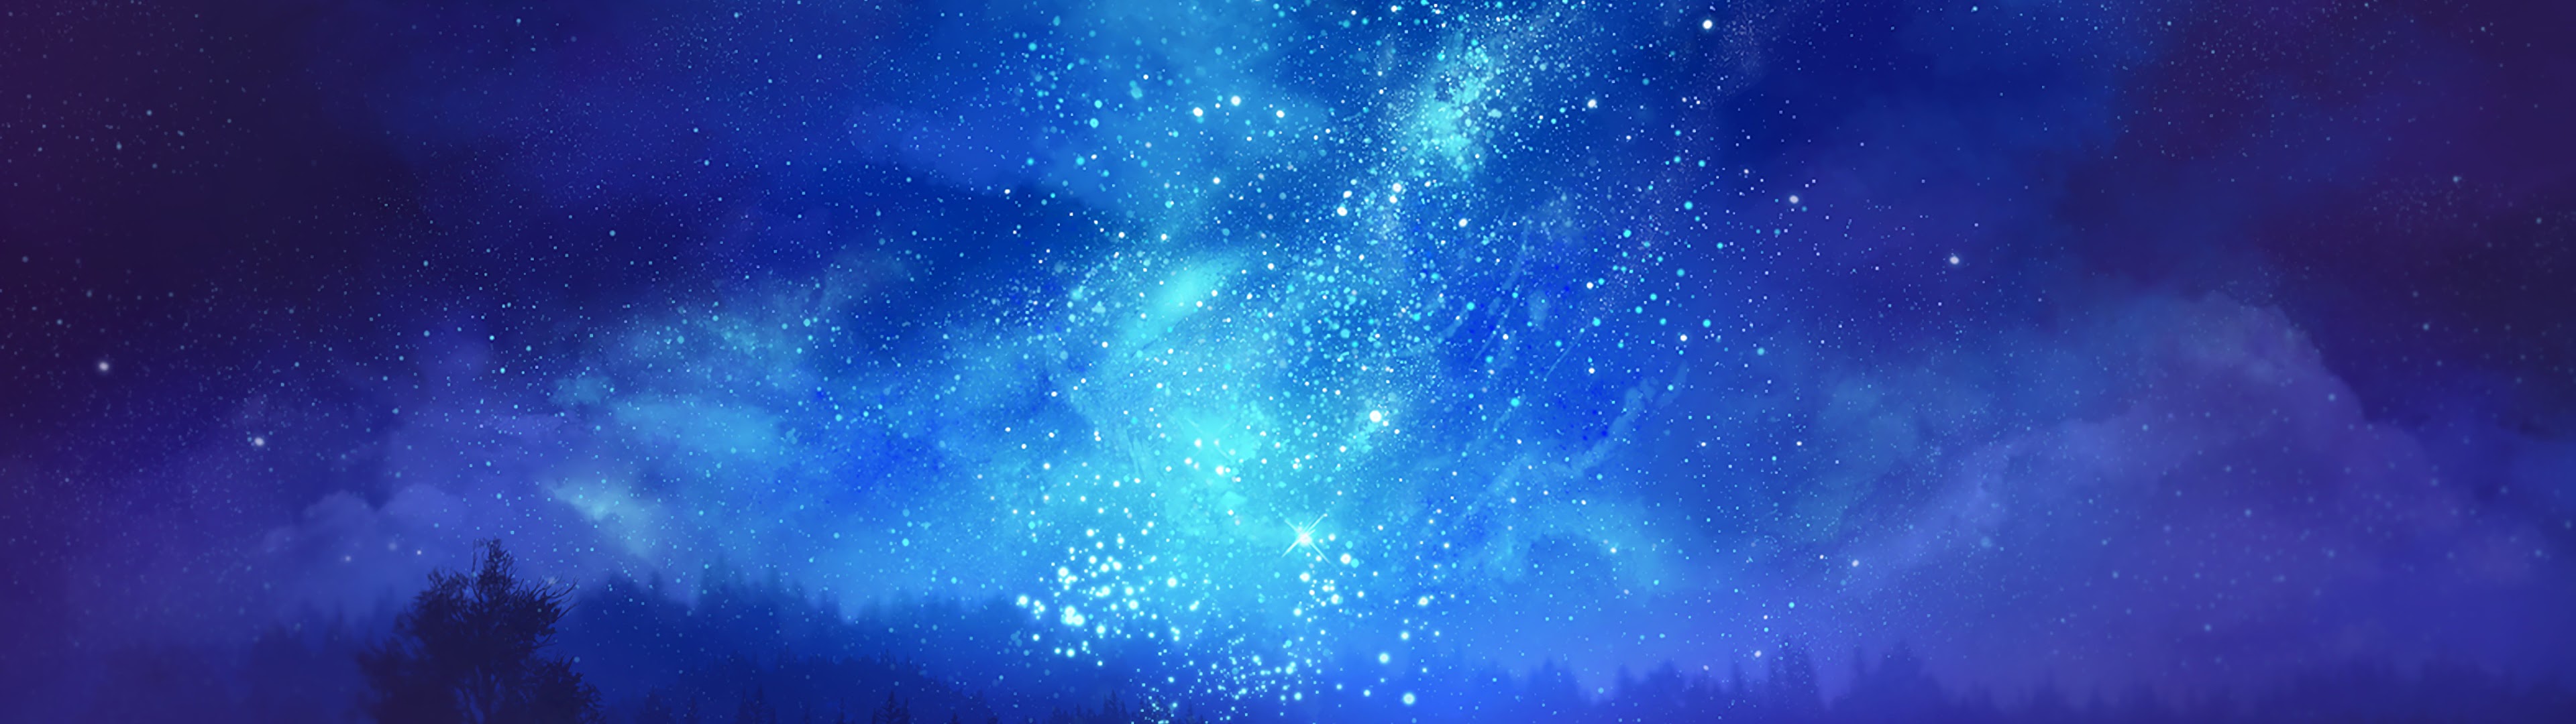 Night, Sky, Stars, Scenery, Anime, 4K, #123 Wallpaper PC Desktop